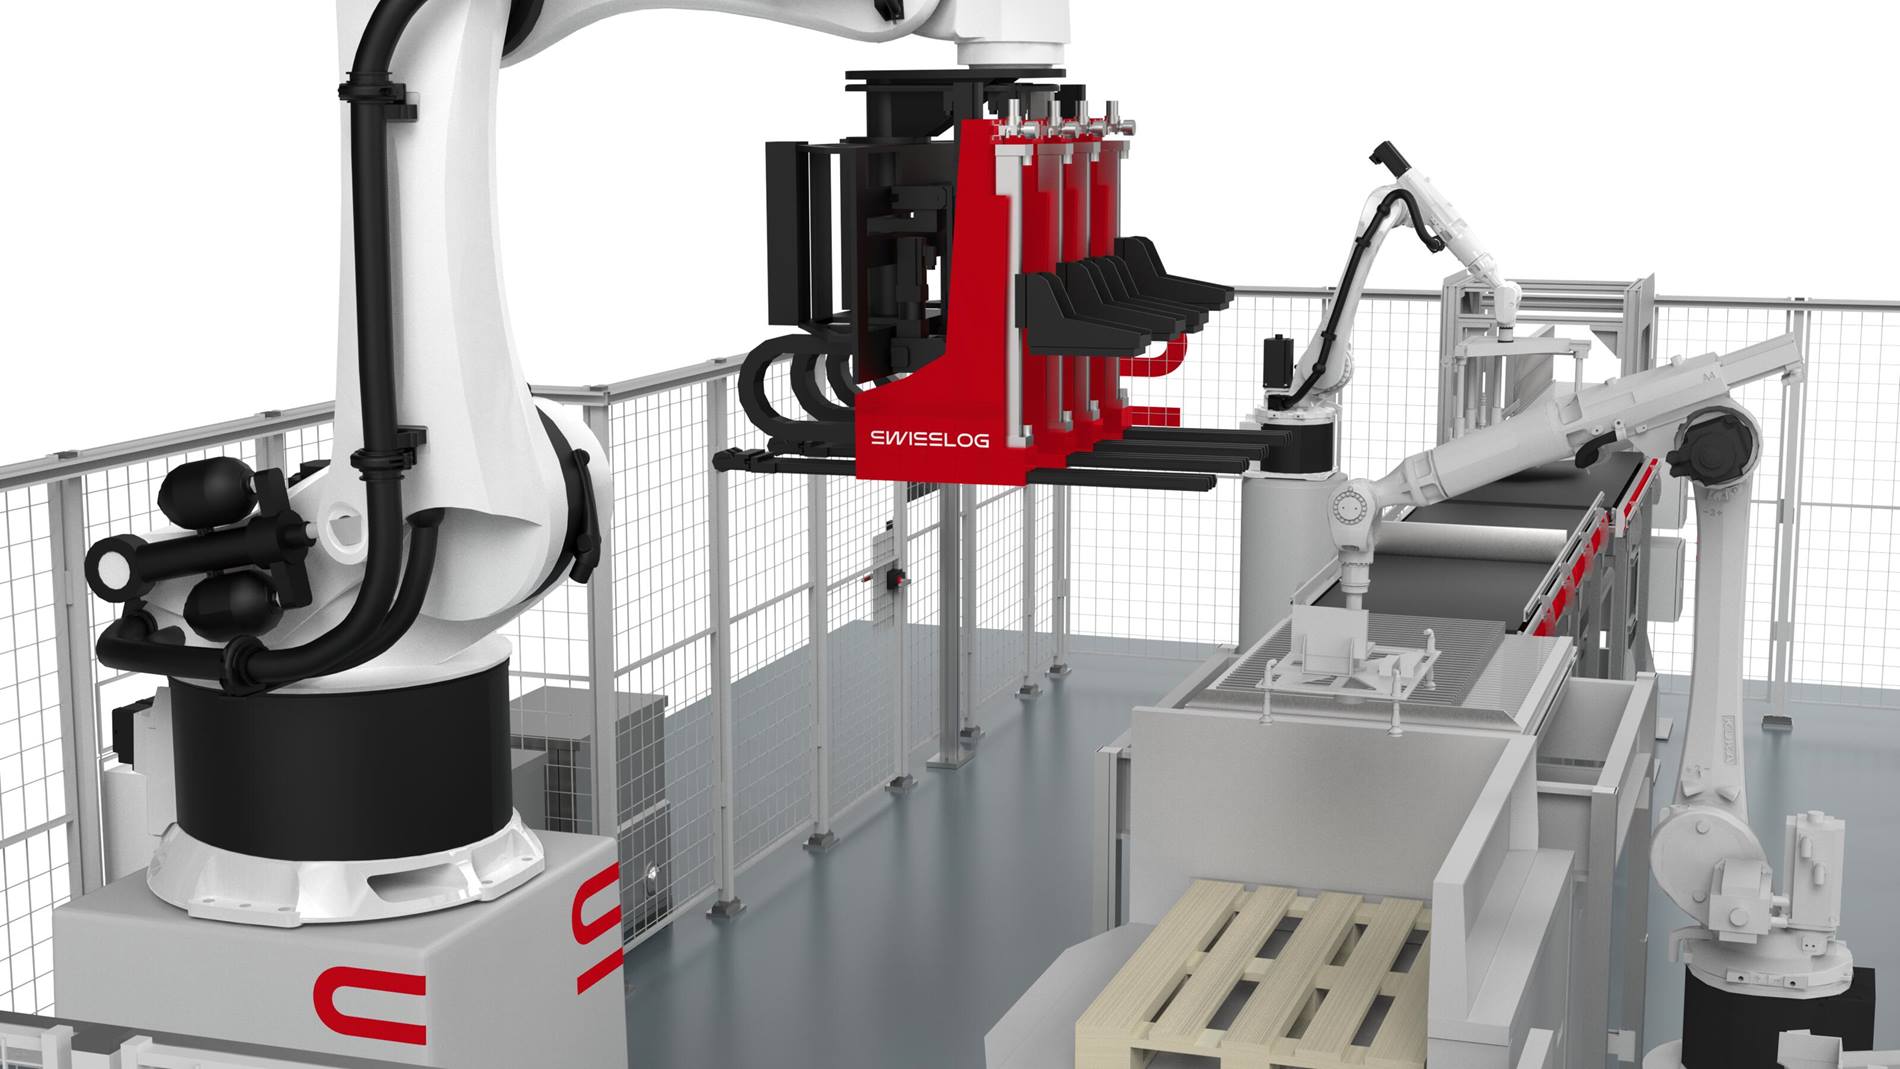 ACPaQ combineert KUKA robot gebaseerde palletisering en Swisslogtechnologie.